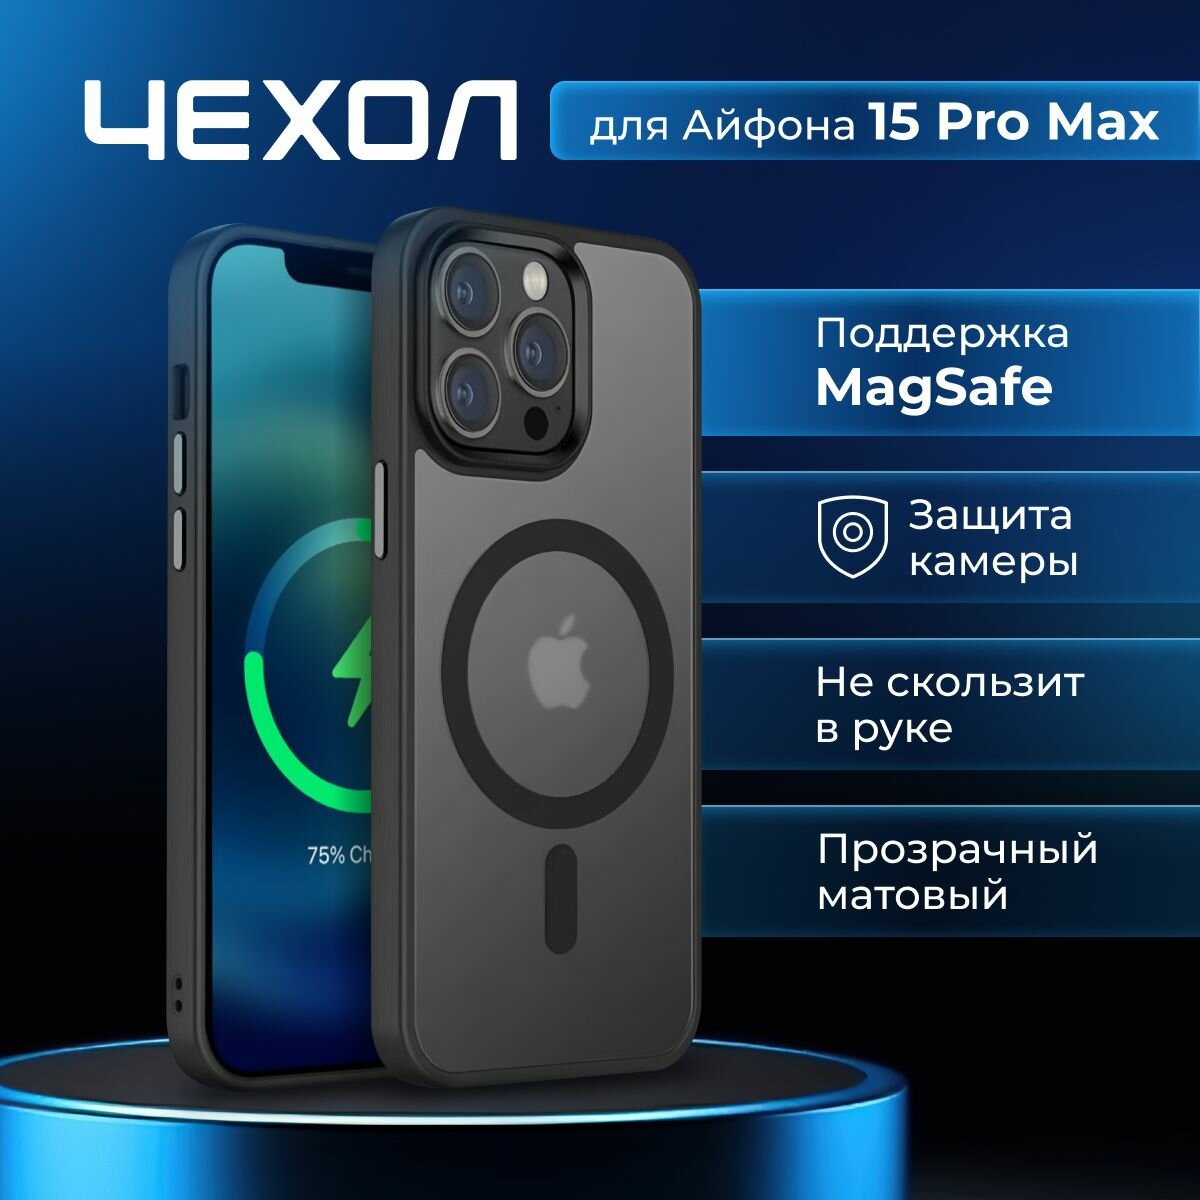 Чехол для айфона 15 Pro Max с кольцом magsafe прозрачный матовый с защитой камеры